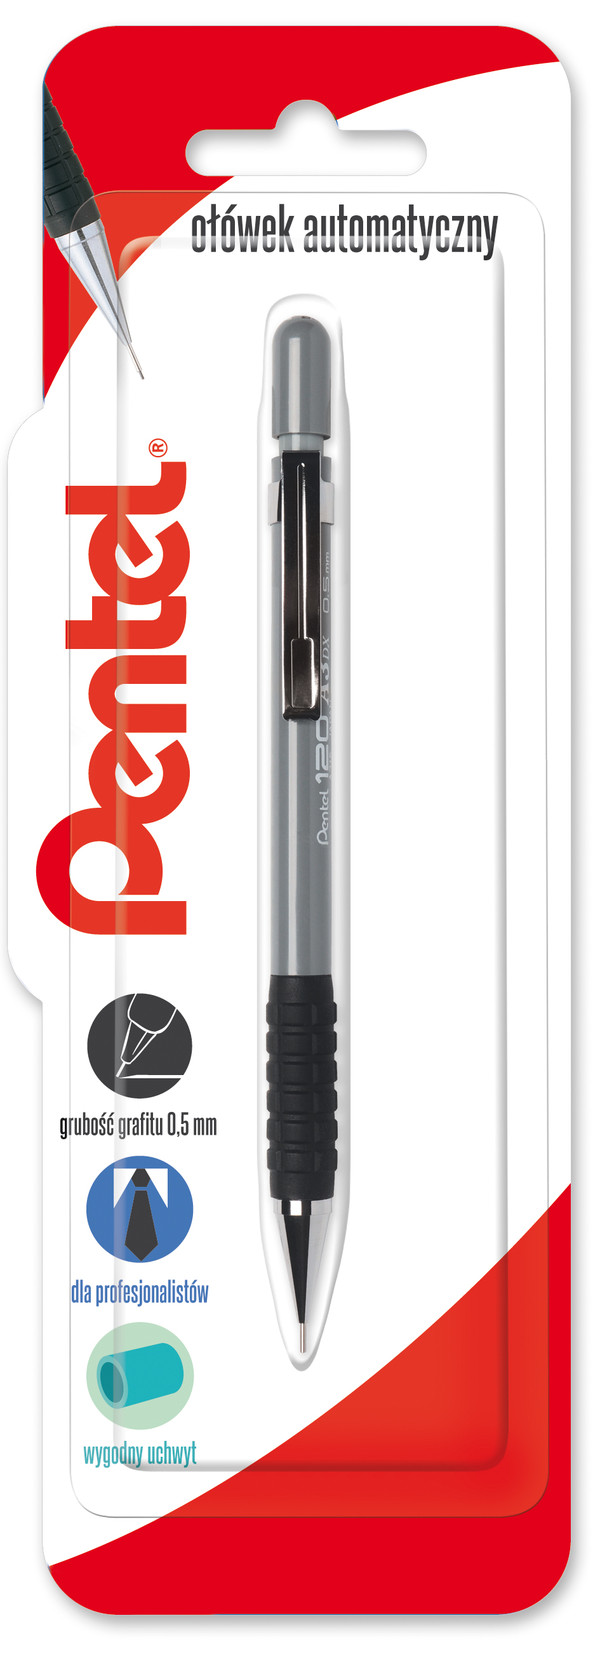 Ołówek automatyczny 0,5 mm a315-n blister